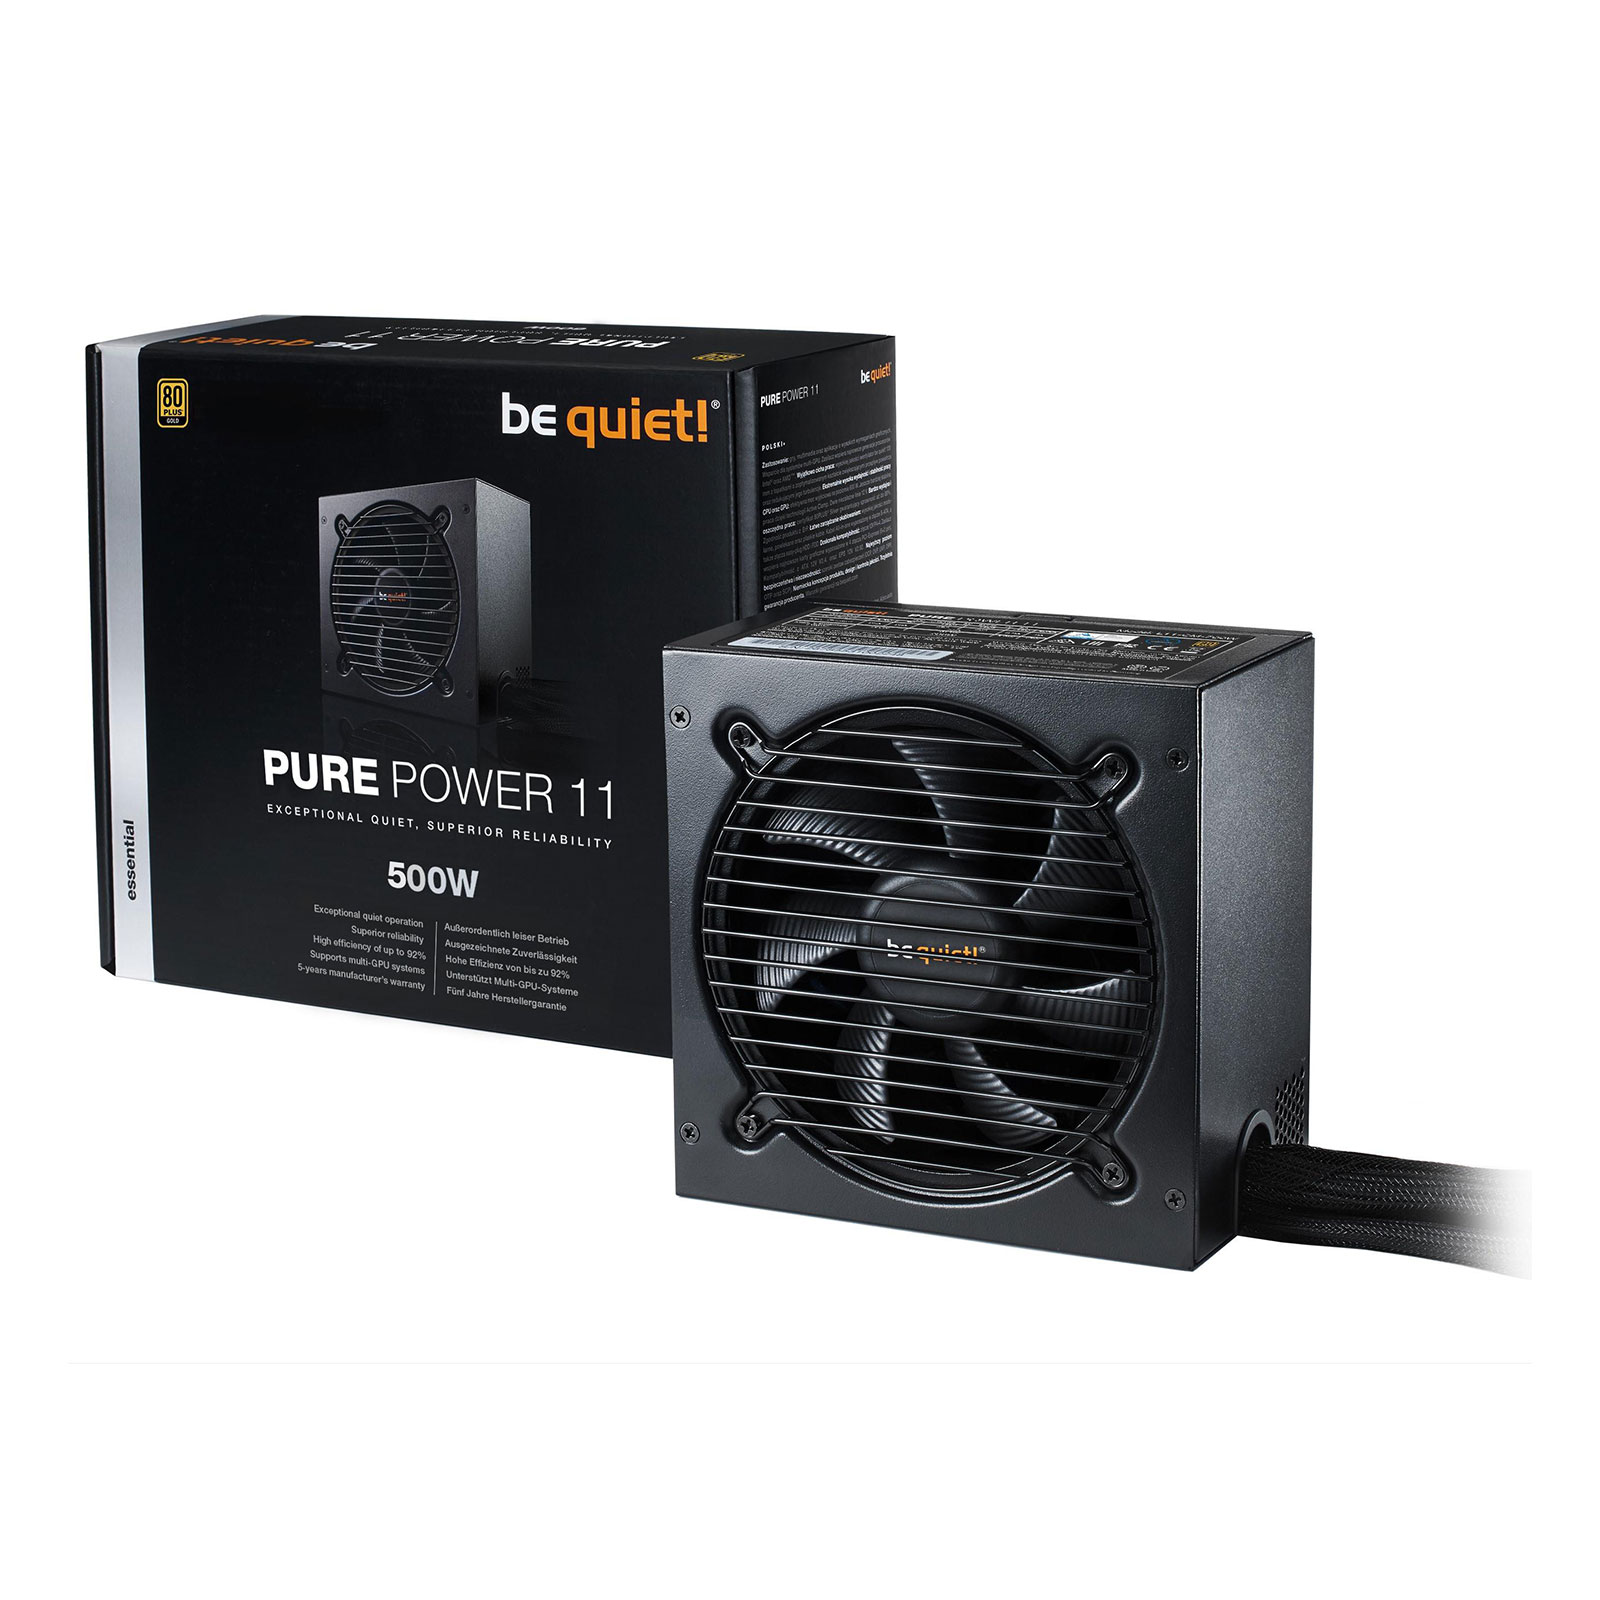 Be quiet! Pure Power 11 500W ATX schwarz PC-Netzteil (für PC)